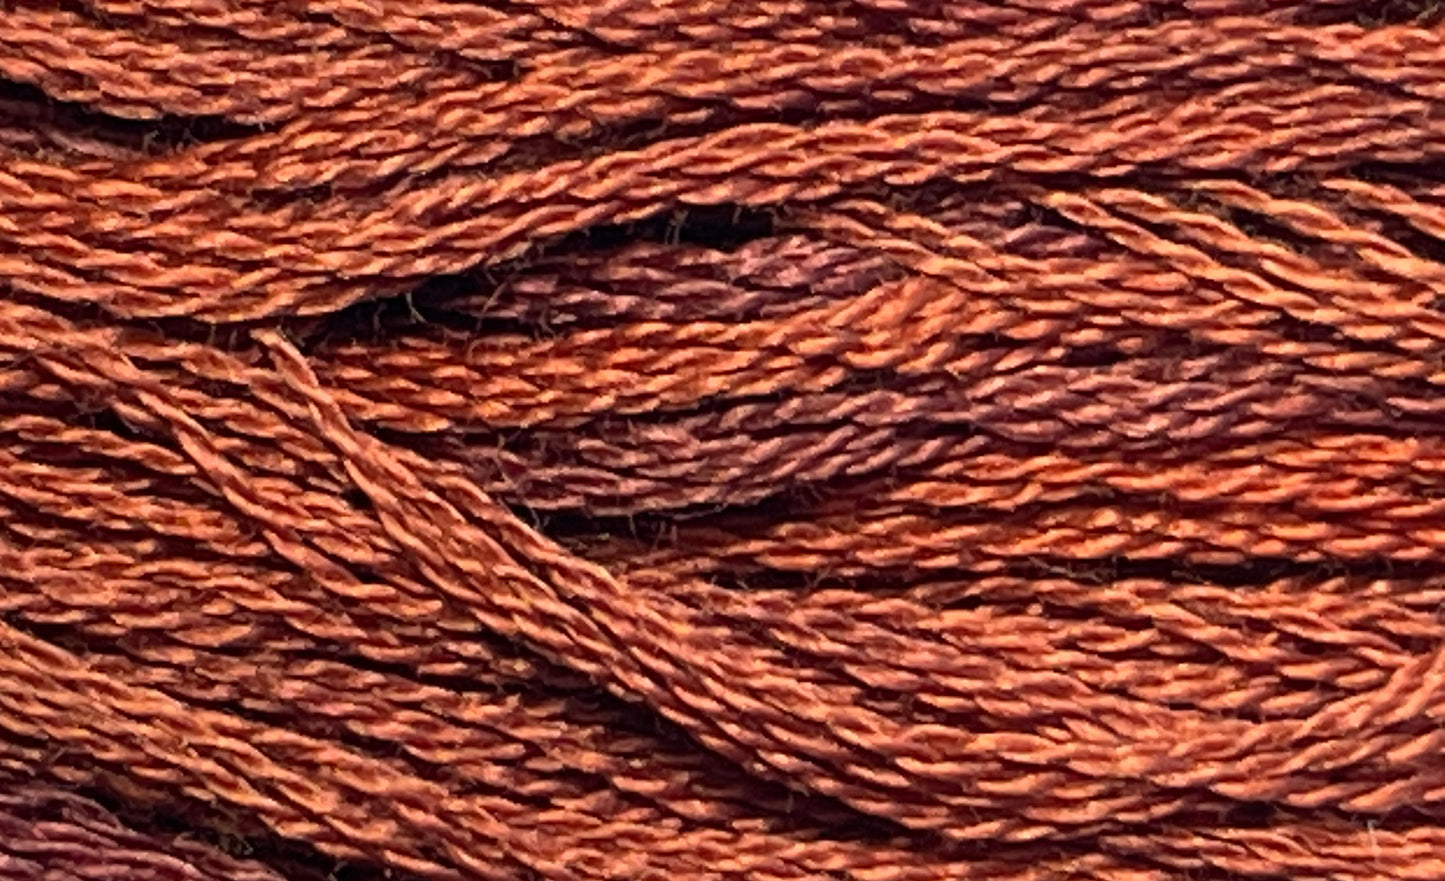 Mulberry - Gentle Arts Cotton Thread - 5 yard Skein - Cross Stitch Floss